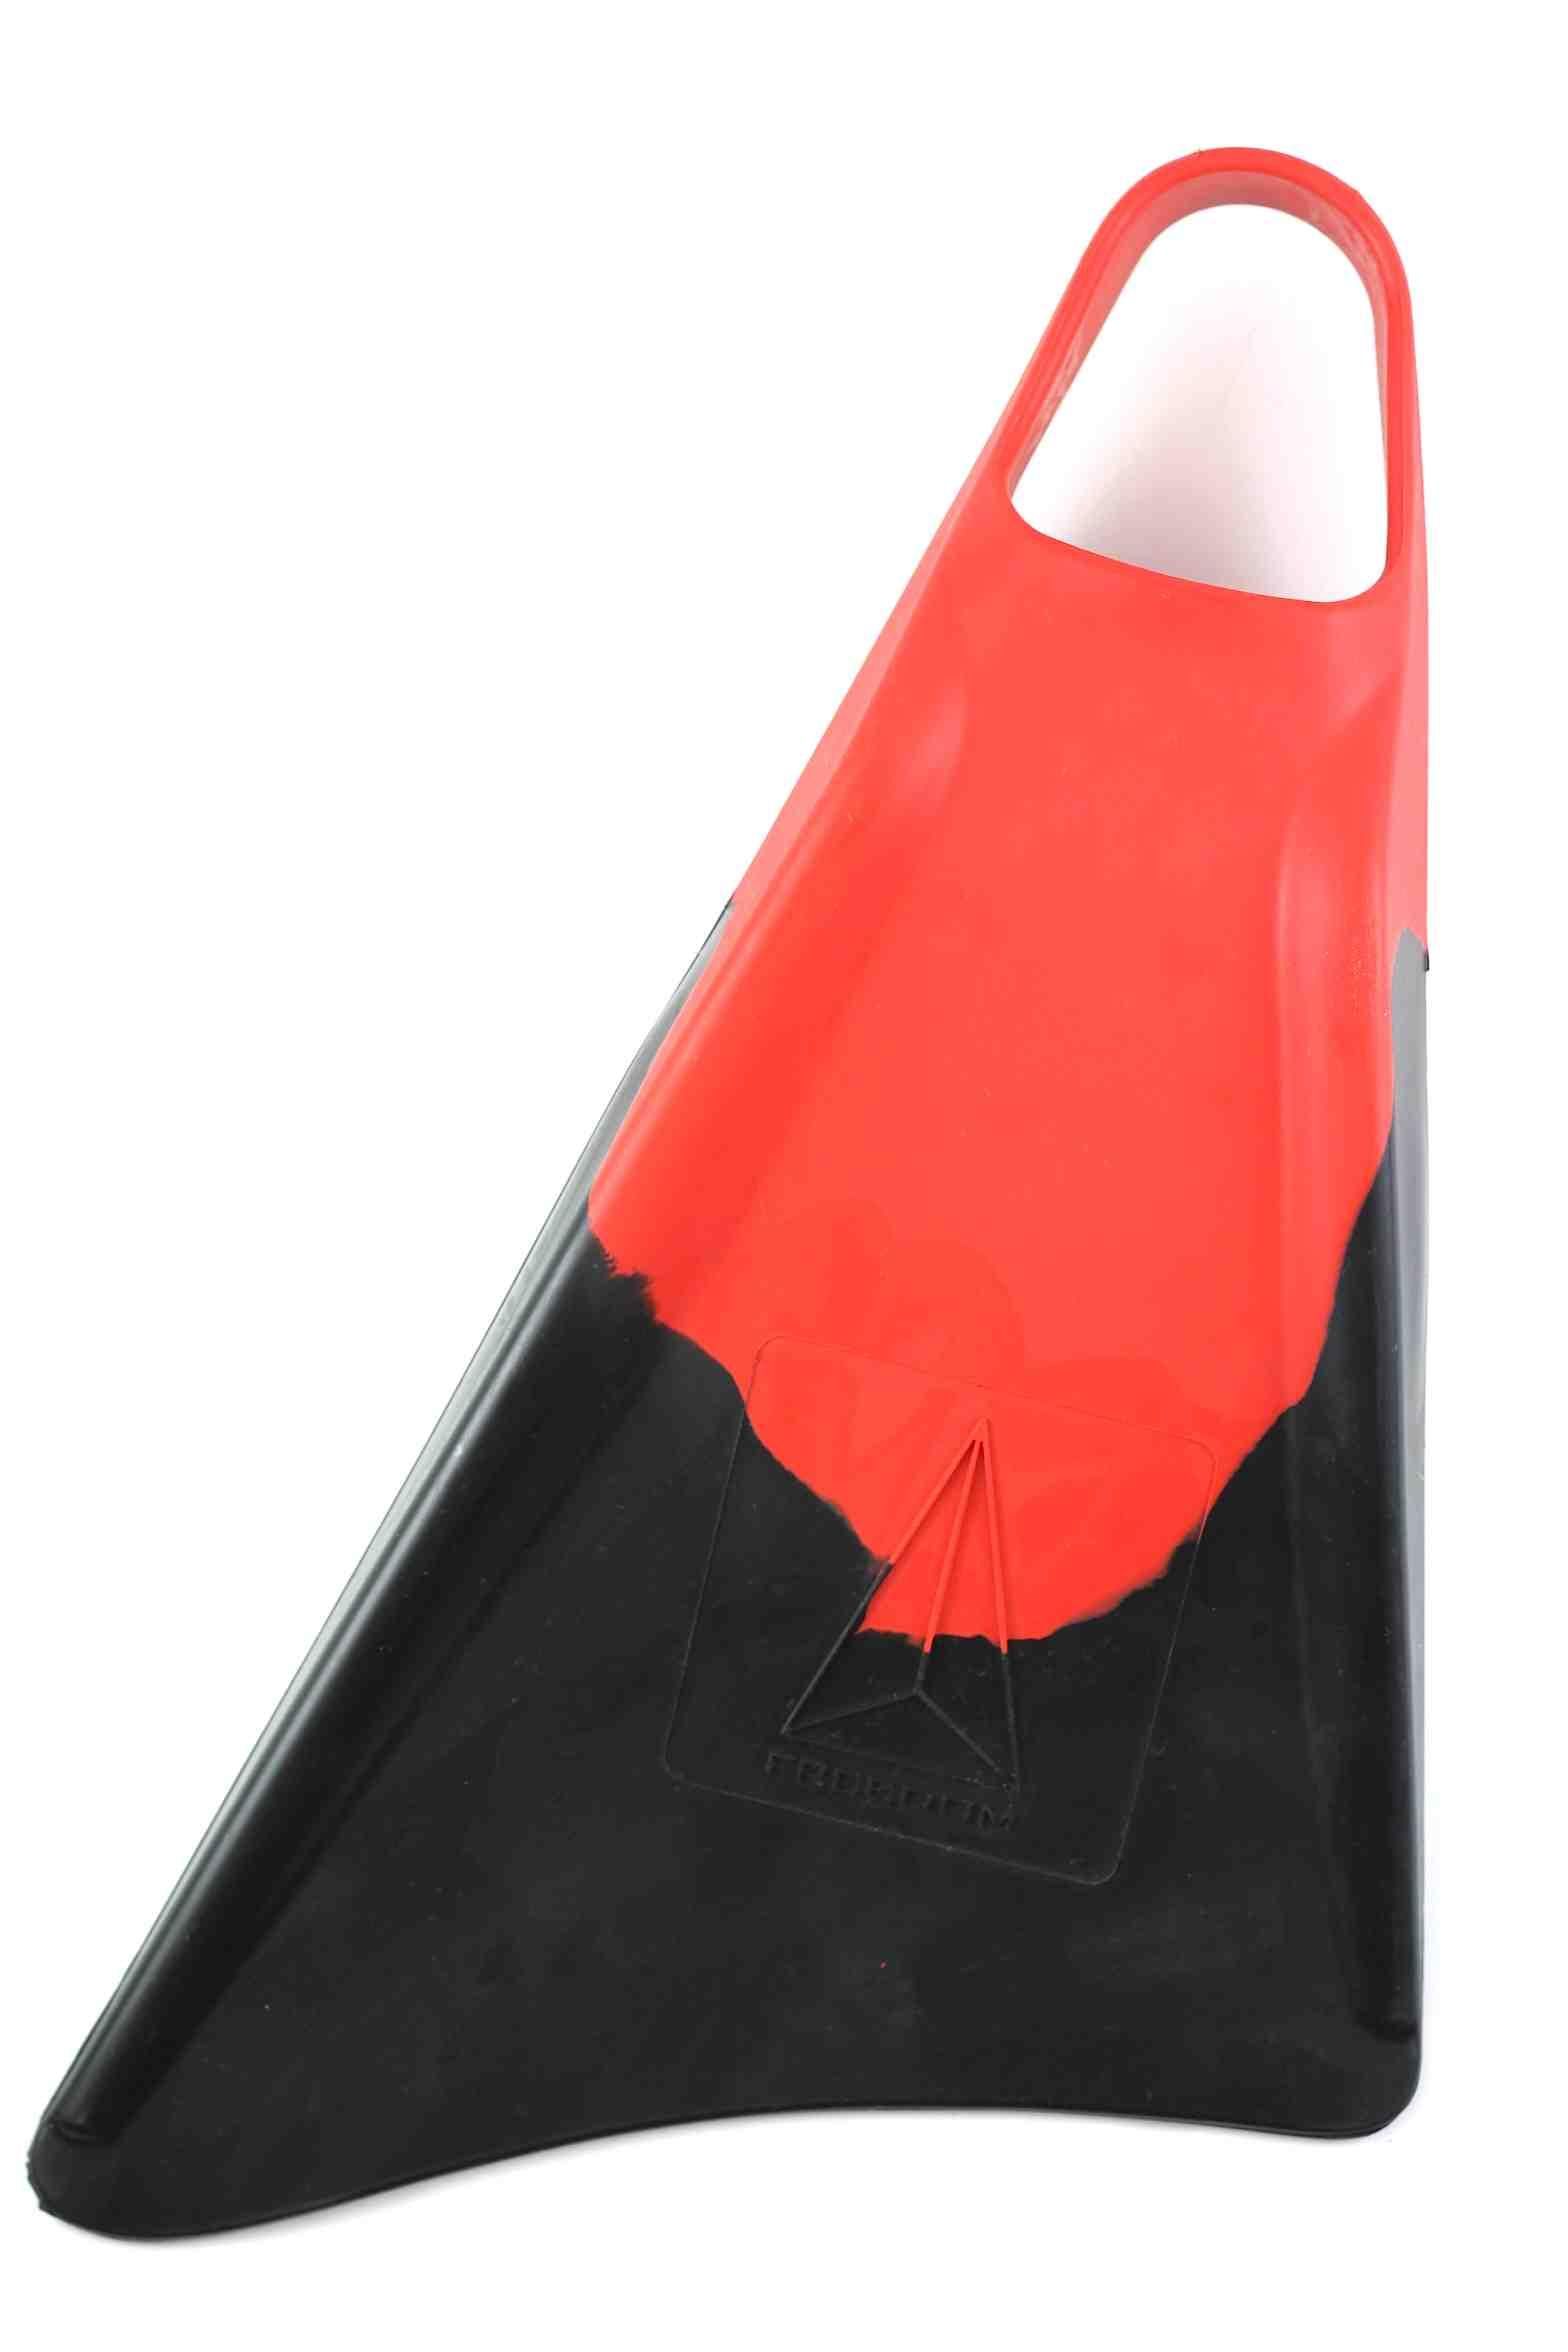 Palmes Bodyboard Rouge / Noir - L